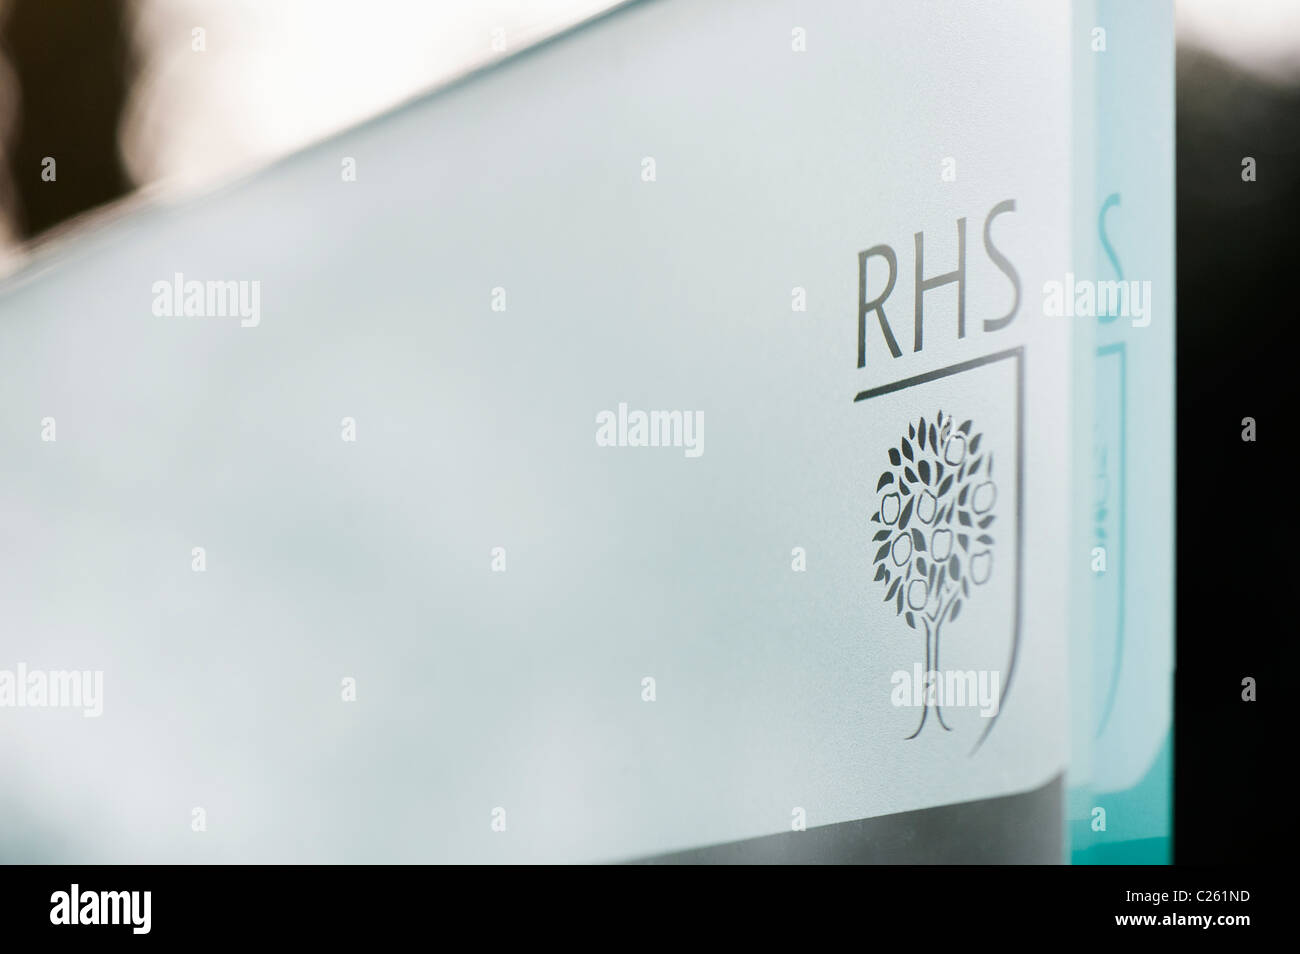 Logotipo RHS grabados en un panel de vidrio. RHS Wisley gardens, Inglaterra Foto de stock